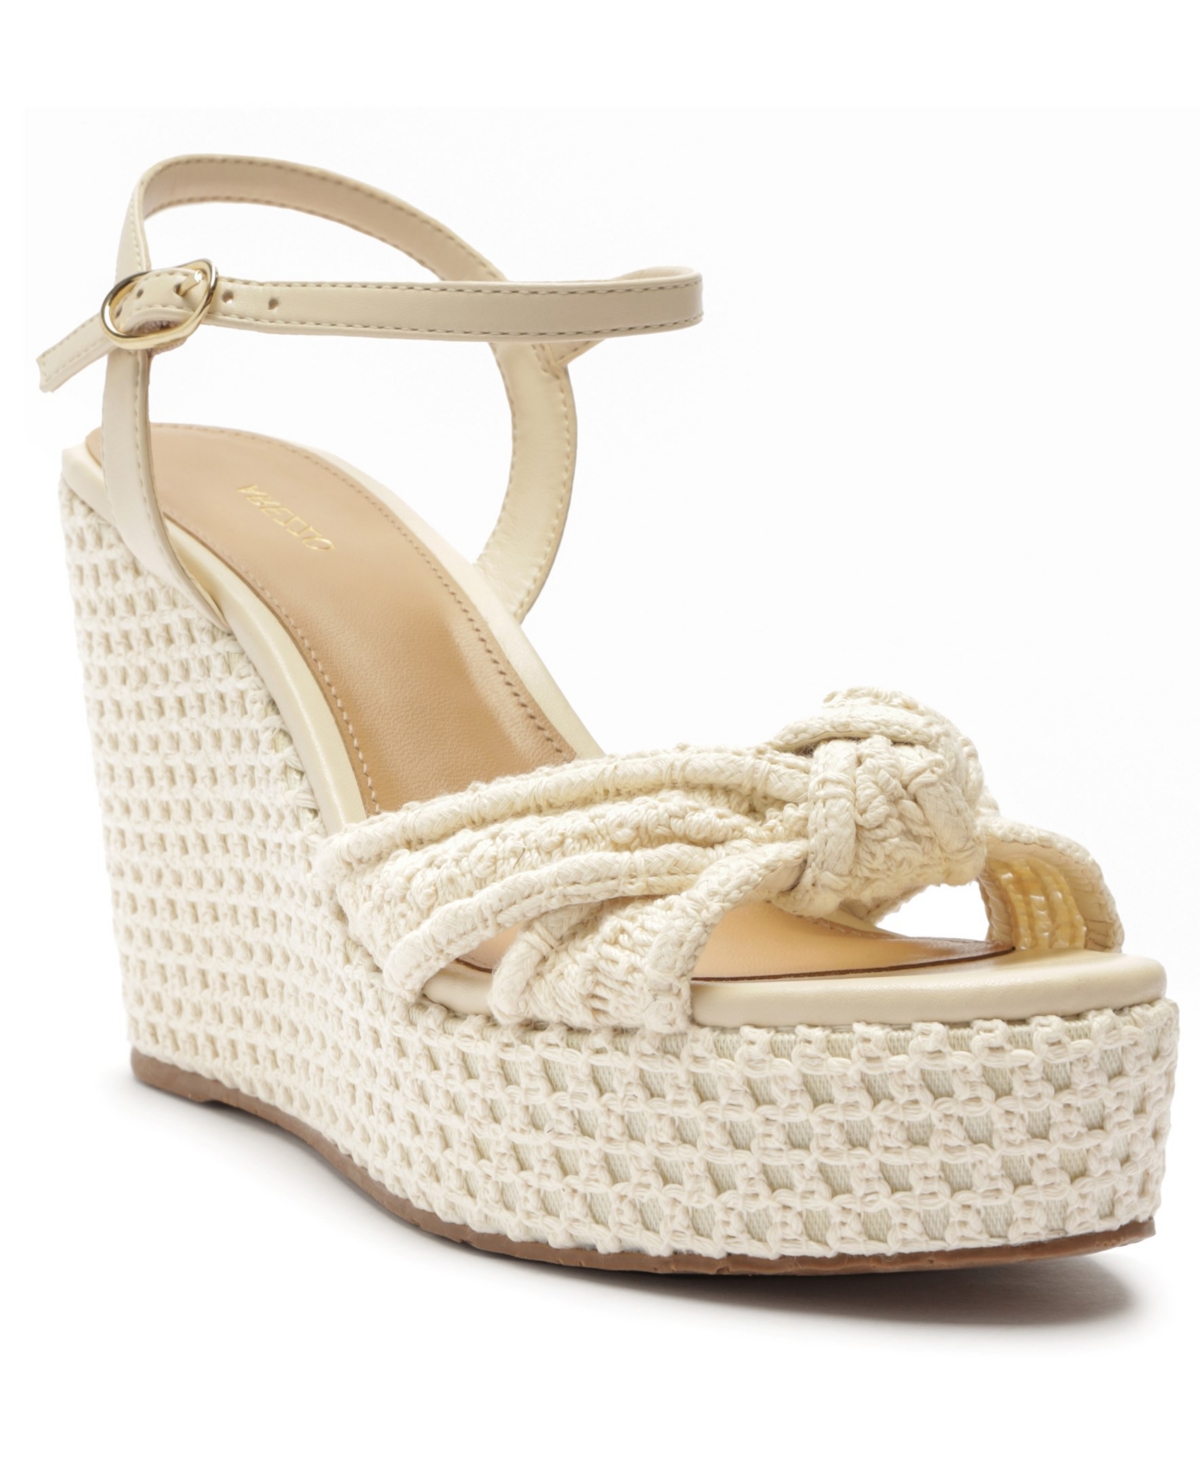 Women's Brianna Platform Wedge Sandals - White